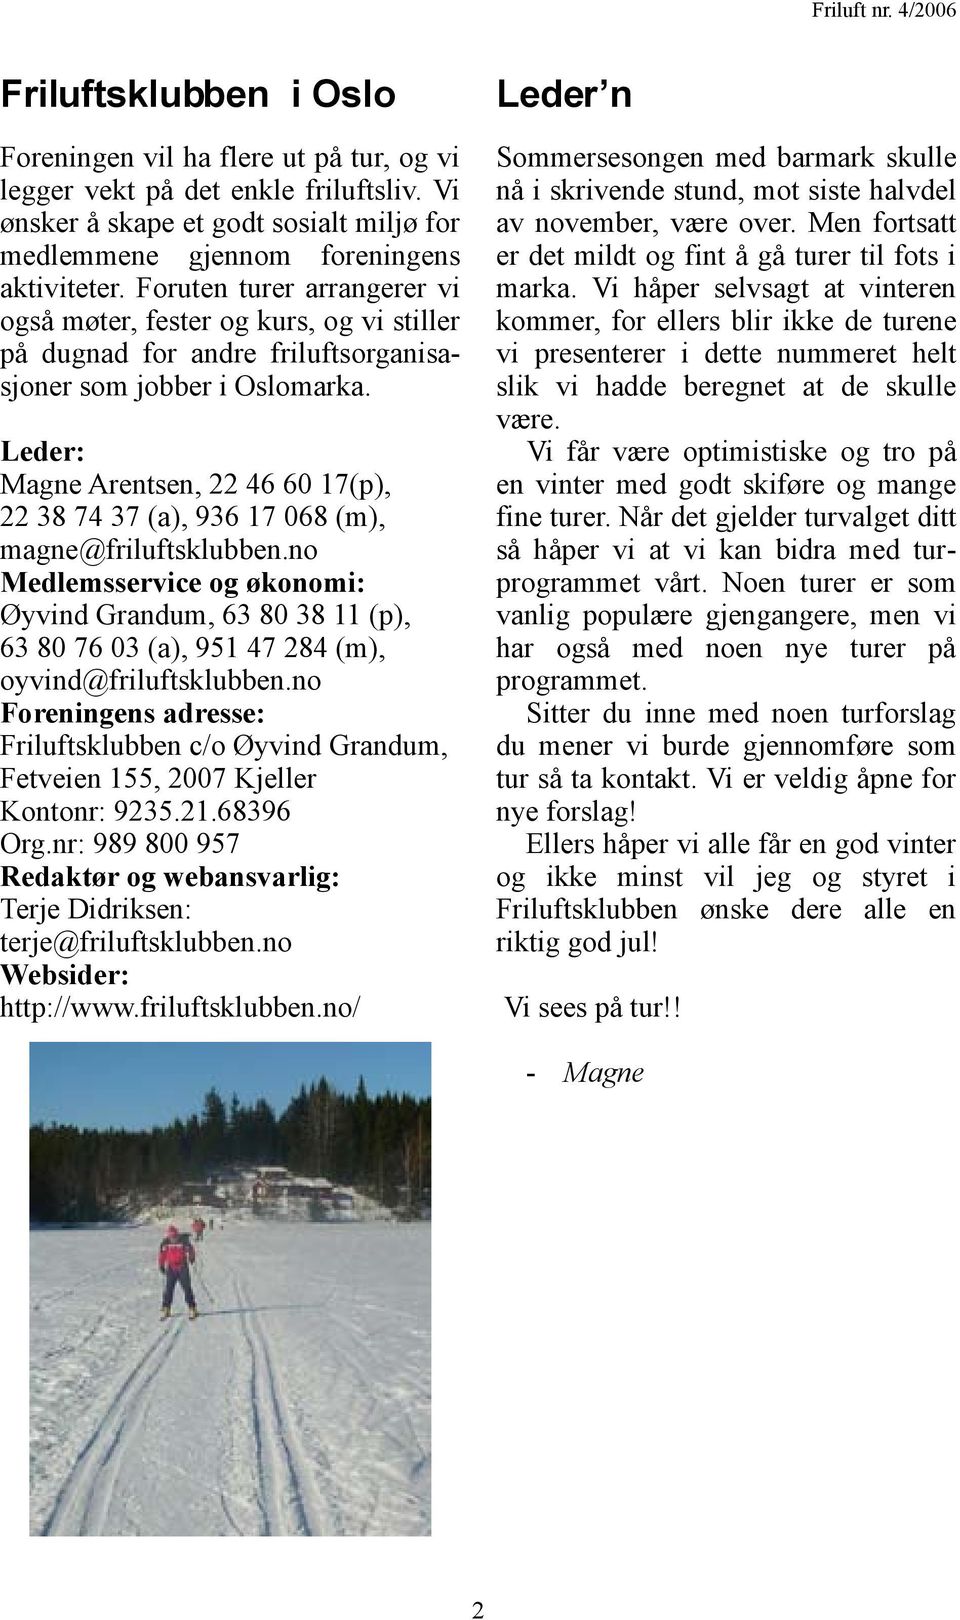 Leder: Magne Arentsen, 22 46 60 17(p), 22 38 74 37 (a), 936 17 068 (m), magne@friluftsklubben.